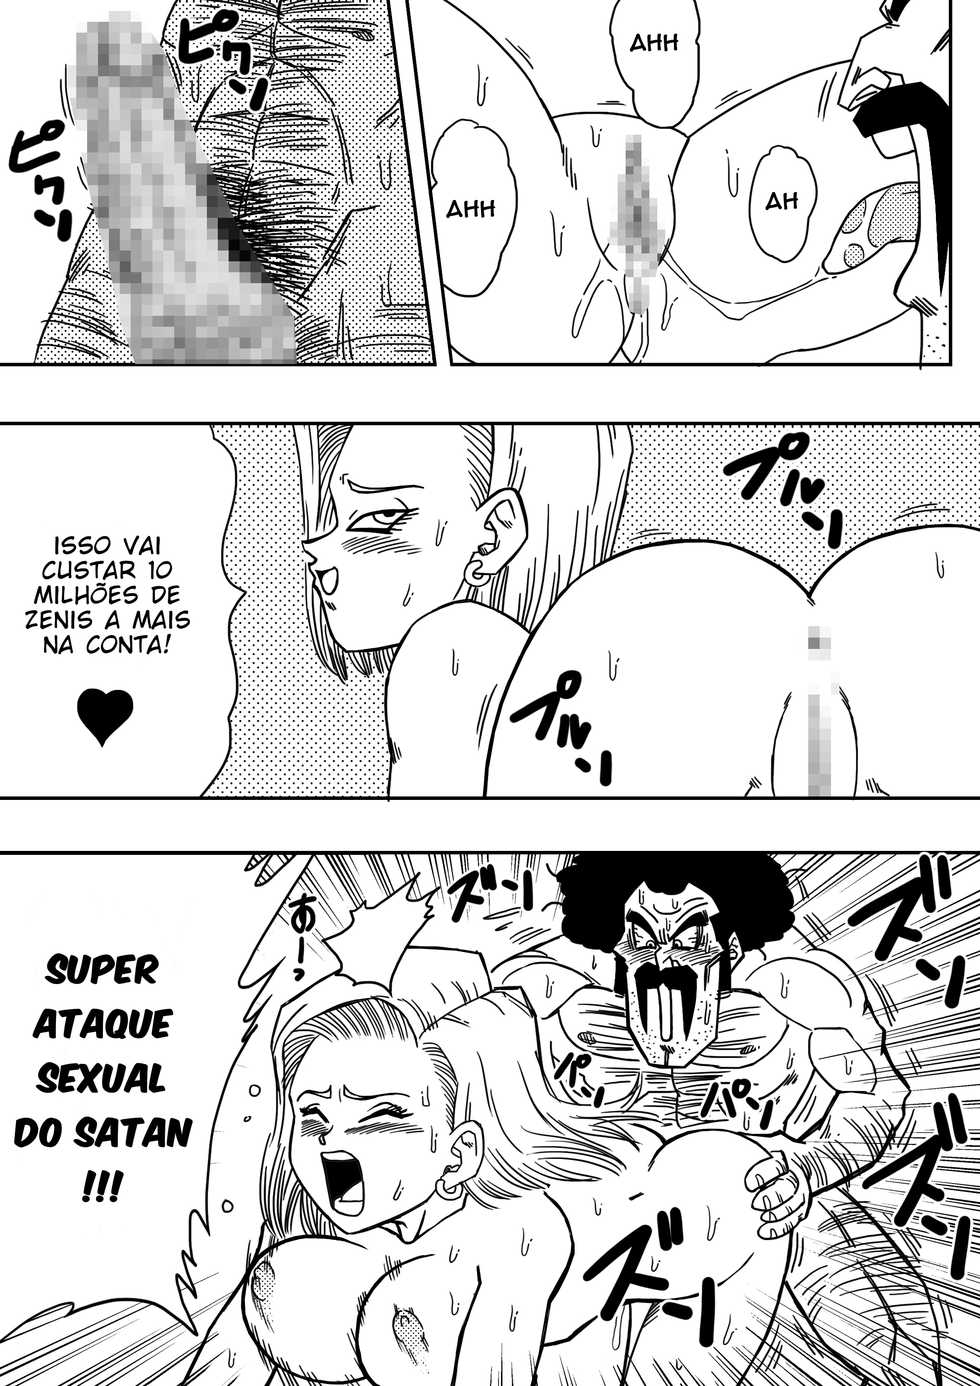 [Yamamoto] 18-gou to Mister Satan!! Seiteki Sentou! | Android Nº 18 e Mr. Satan!! Sexo Entre Lutadores! (Dragon Ball Z) [Portuguese-BR] =Ero-Genko= - Page 9